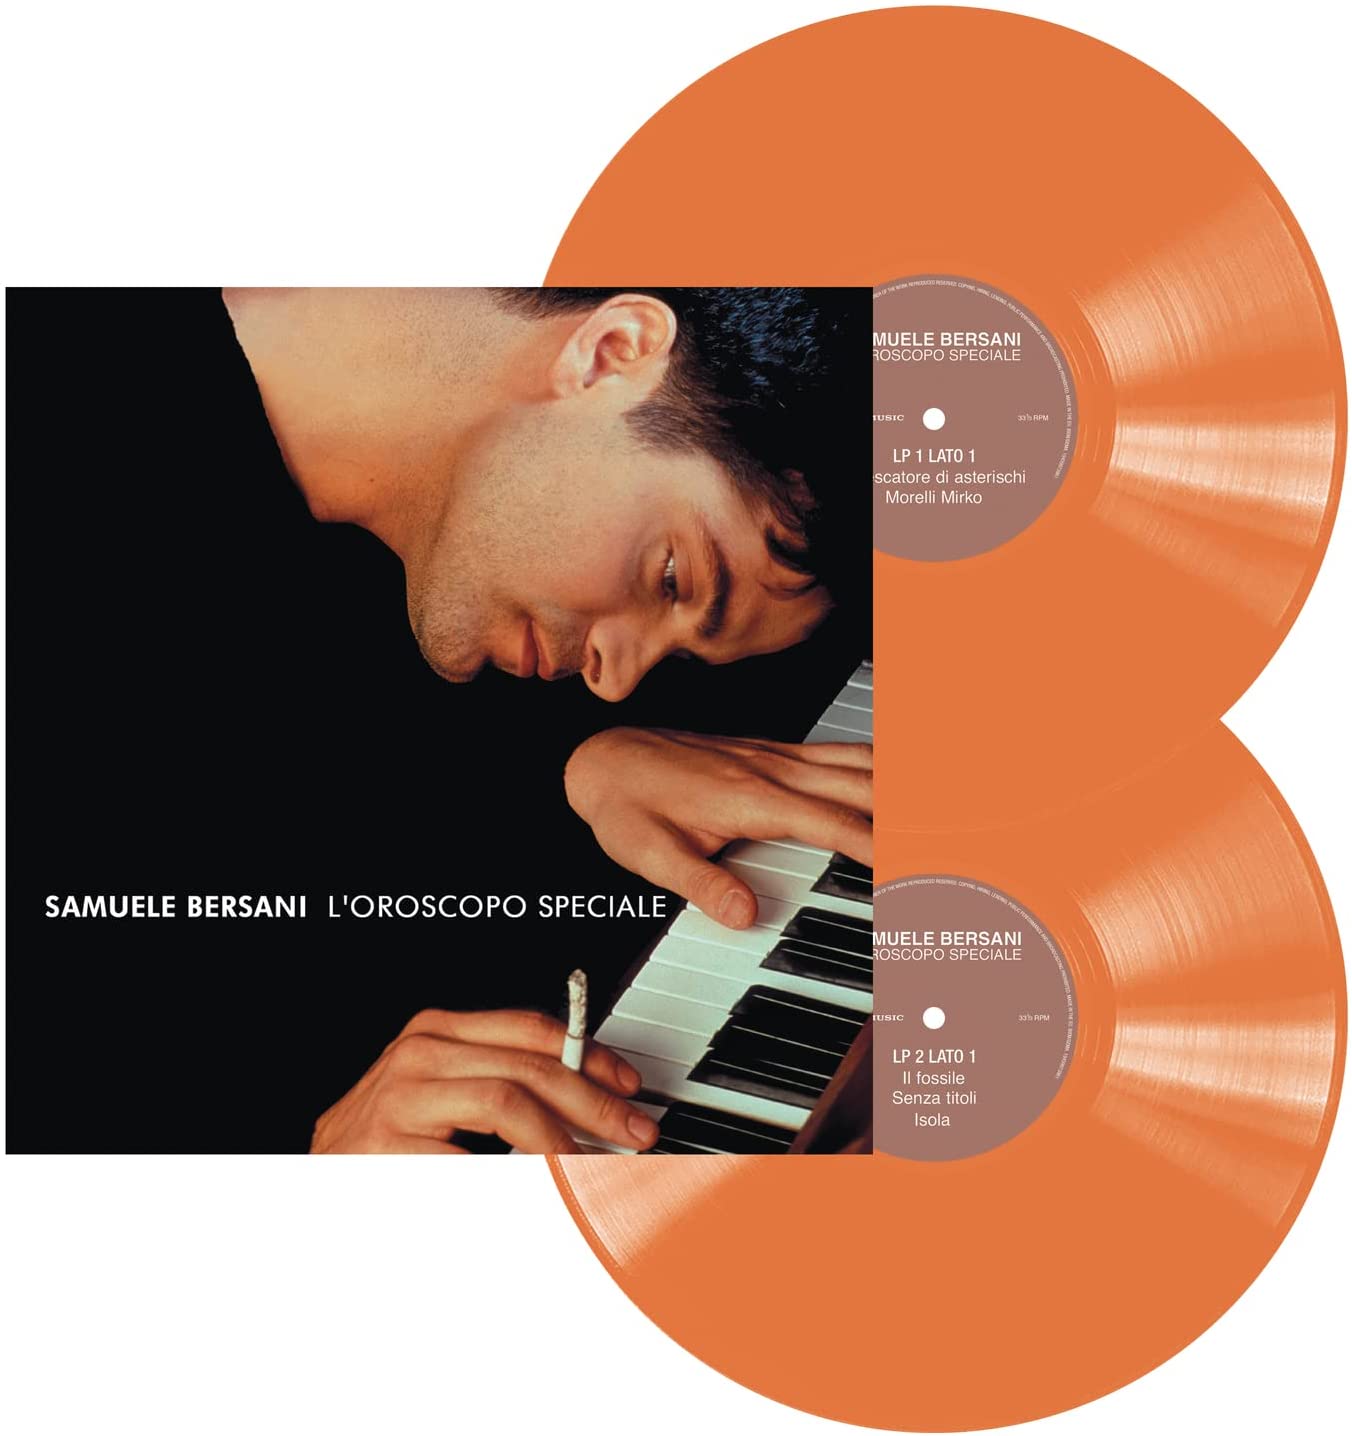 Vinile Samuele Bersani - L'Oroscopo Speciale (Orange Vinyl) (2 Lp) NUOVO SIGILLATO, EDIZIONE DEL 13/05/2022 SUBITO DISPONIBILE